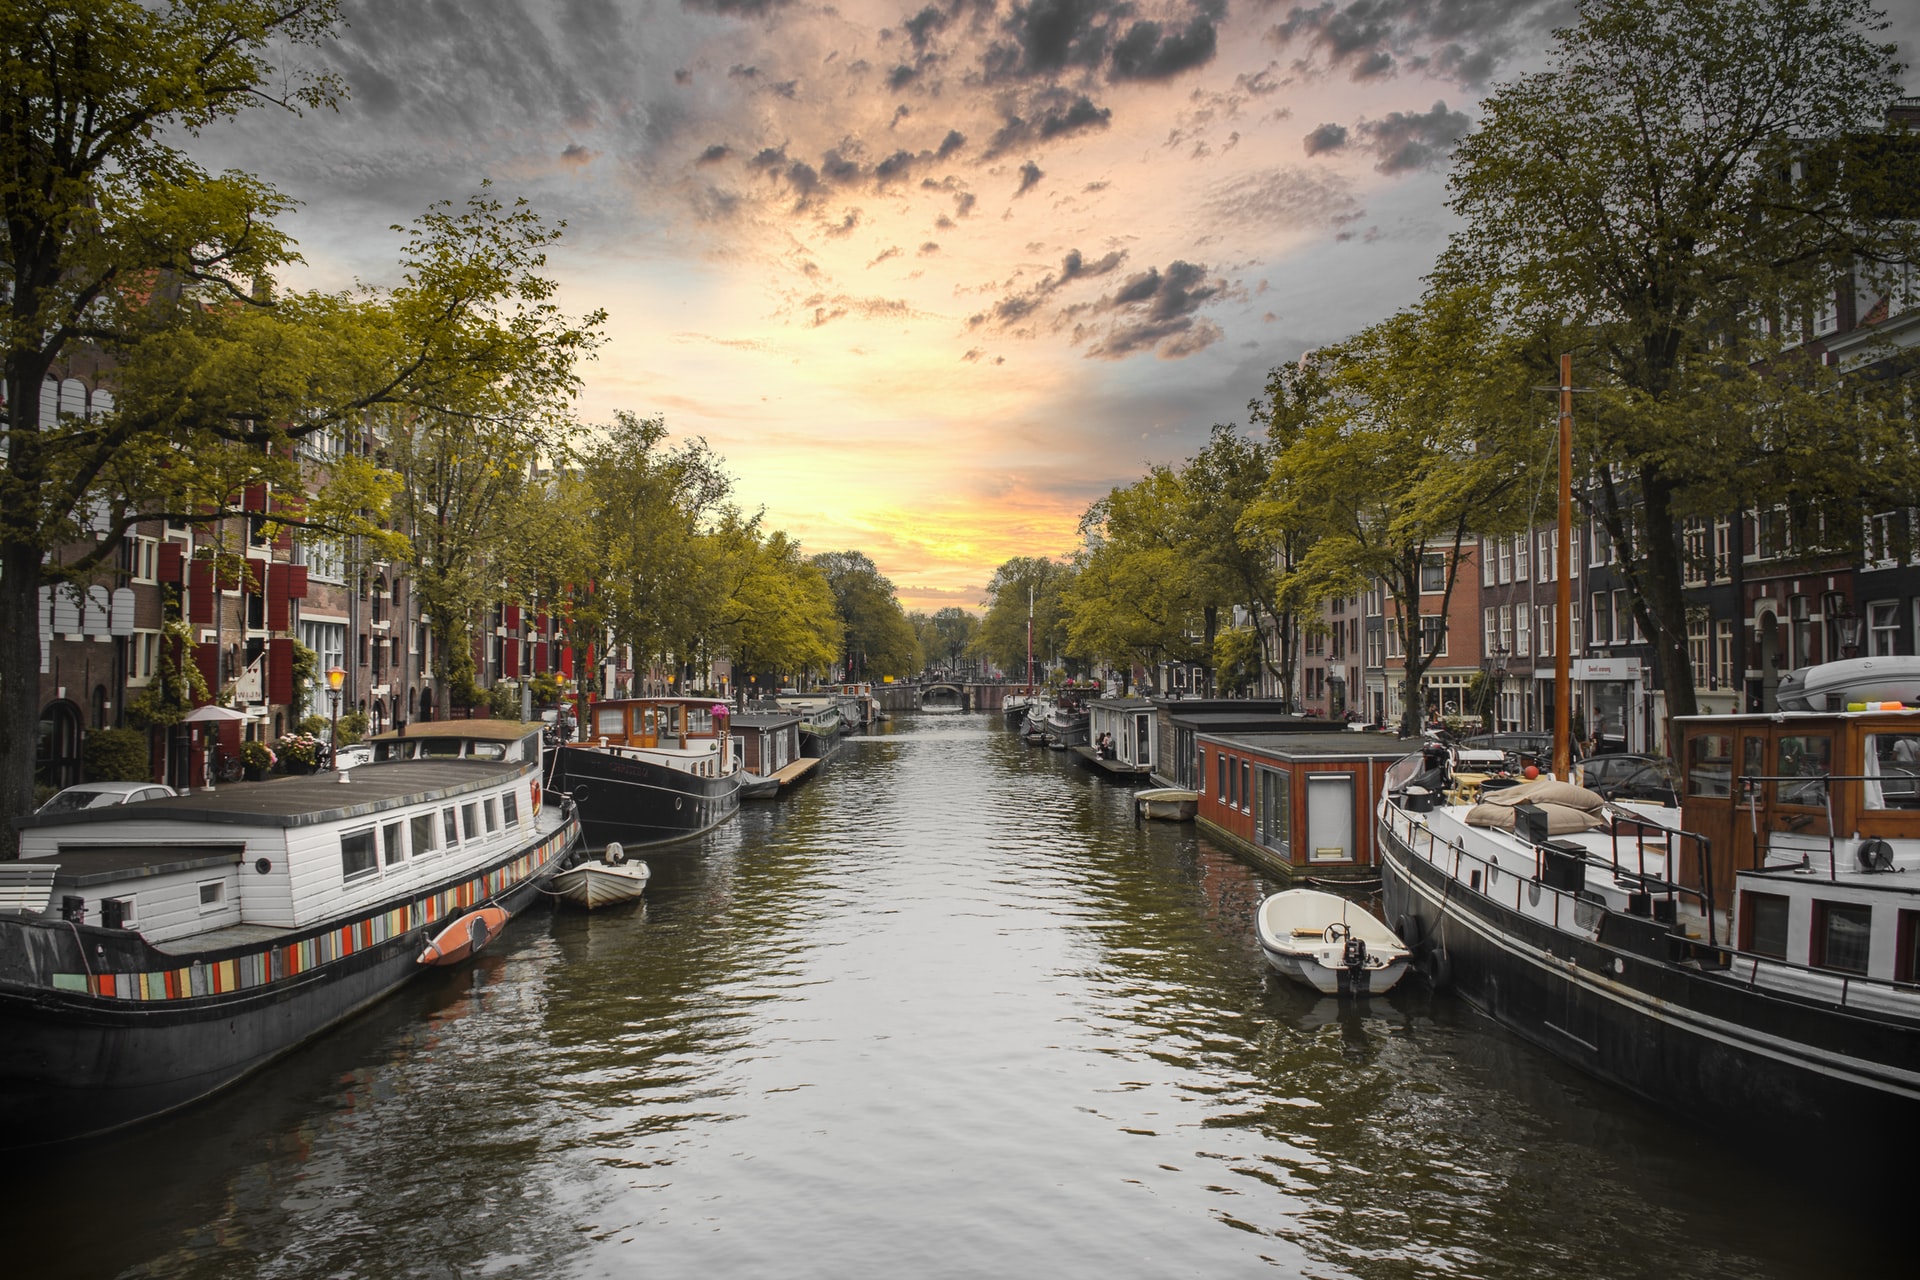 El cinturó de canals d'Amsterdam, conegut com a Grachtengordel en holandès, és una àrea pintoresca i vibrant que voreja els quatre canals principals de la ciutat: Singel, Herengracht, Keizersgracht i Prinsengracht. 